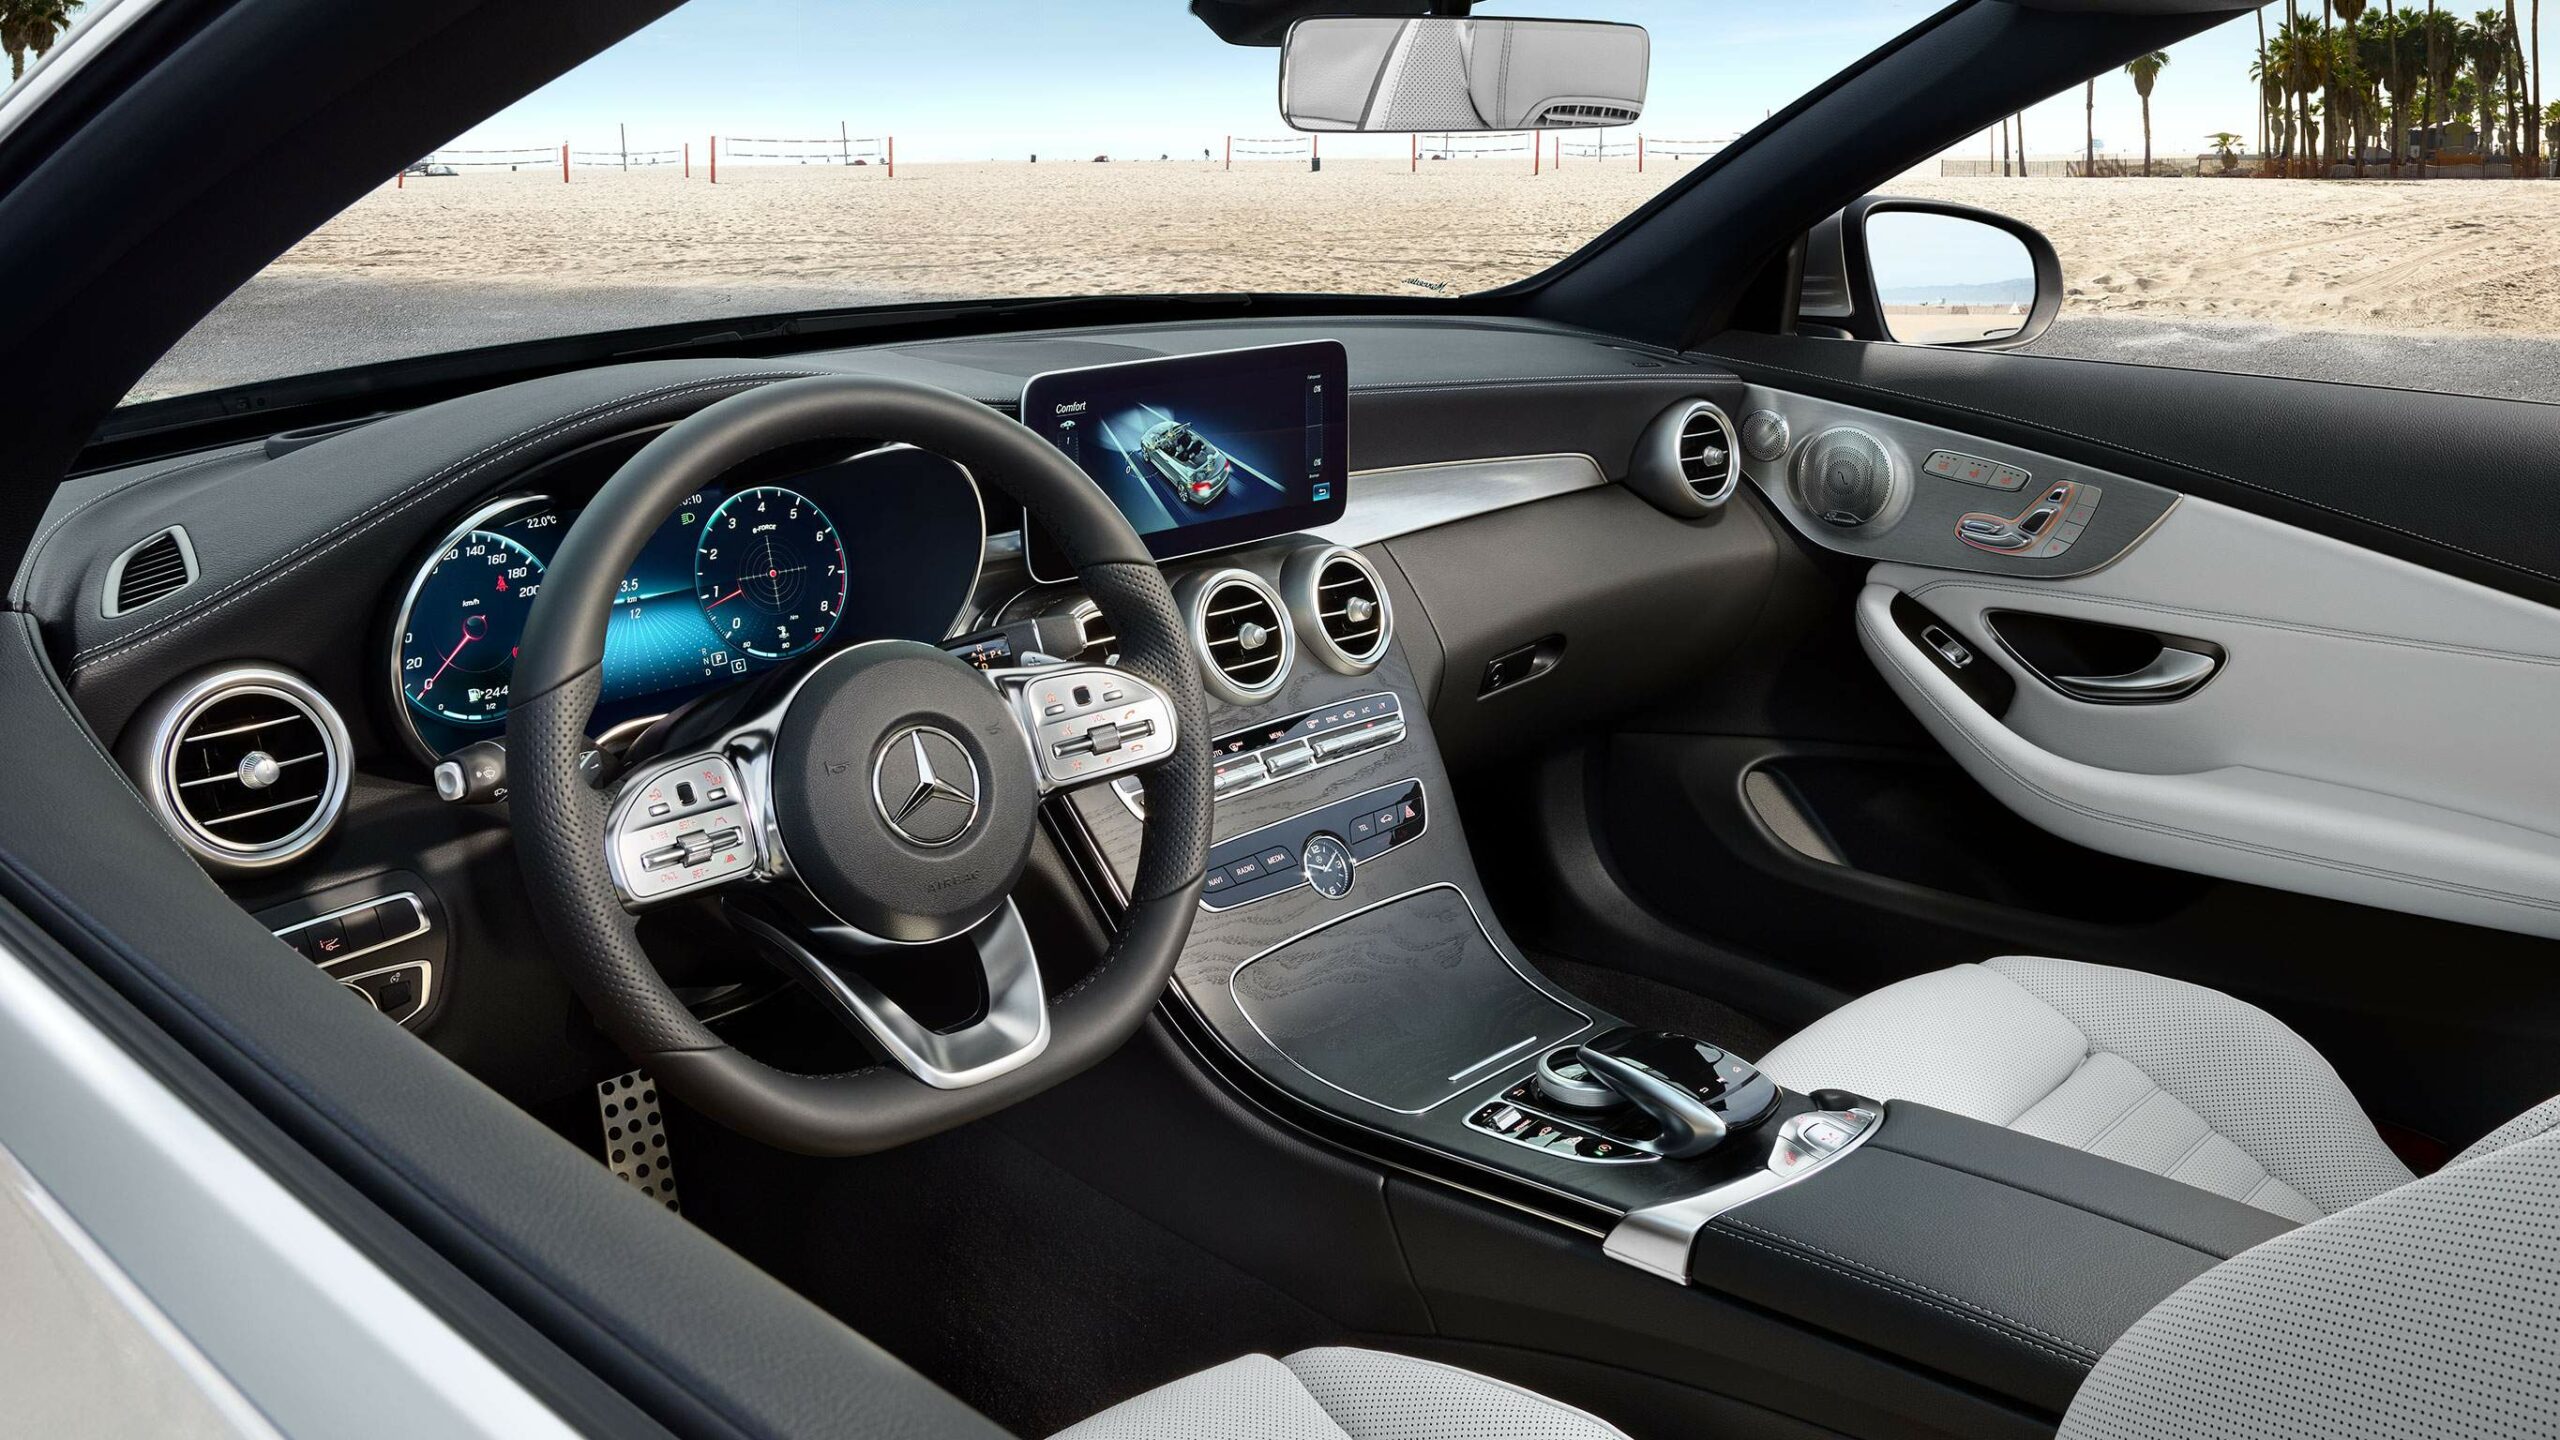 Habitaculo interior de la Clase C Cabriolet de Mercedes-Benz